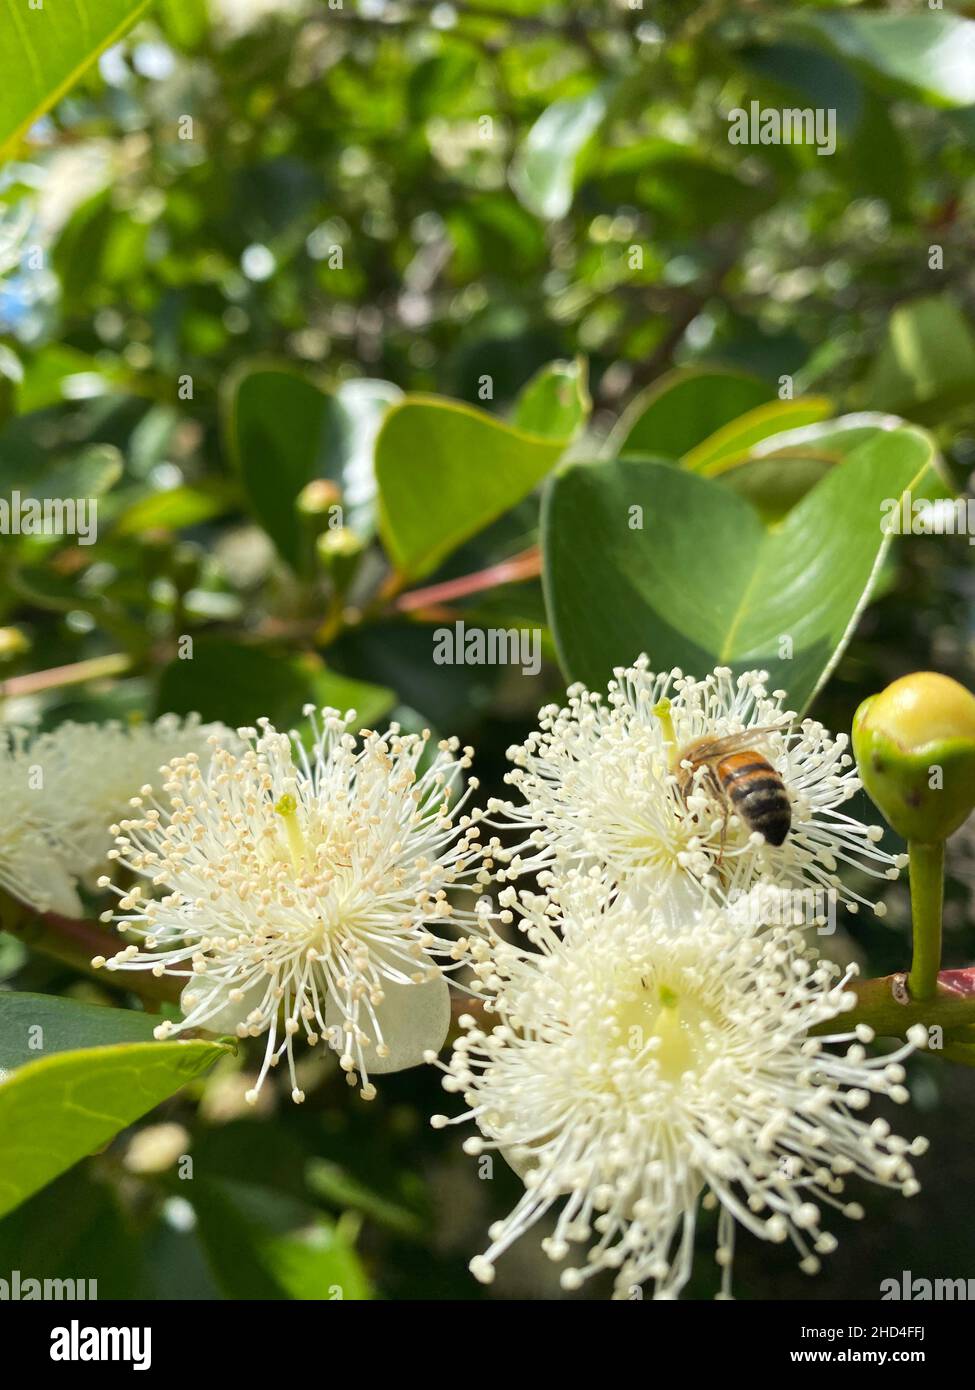 Die Biene, die Bestäuber ist, ist Lebensvertreiber! Blüte und natürliche Ressourcen sind für ihr Überleben notwendig. Stockfoto